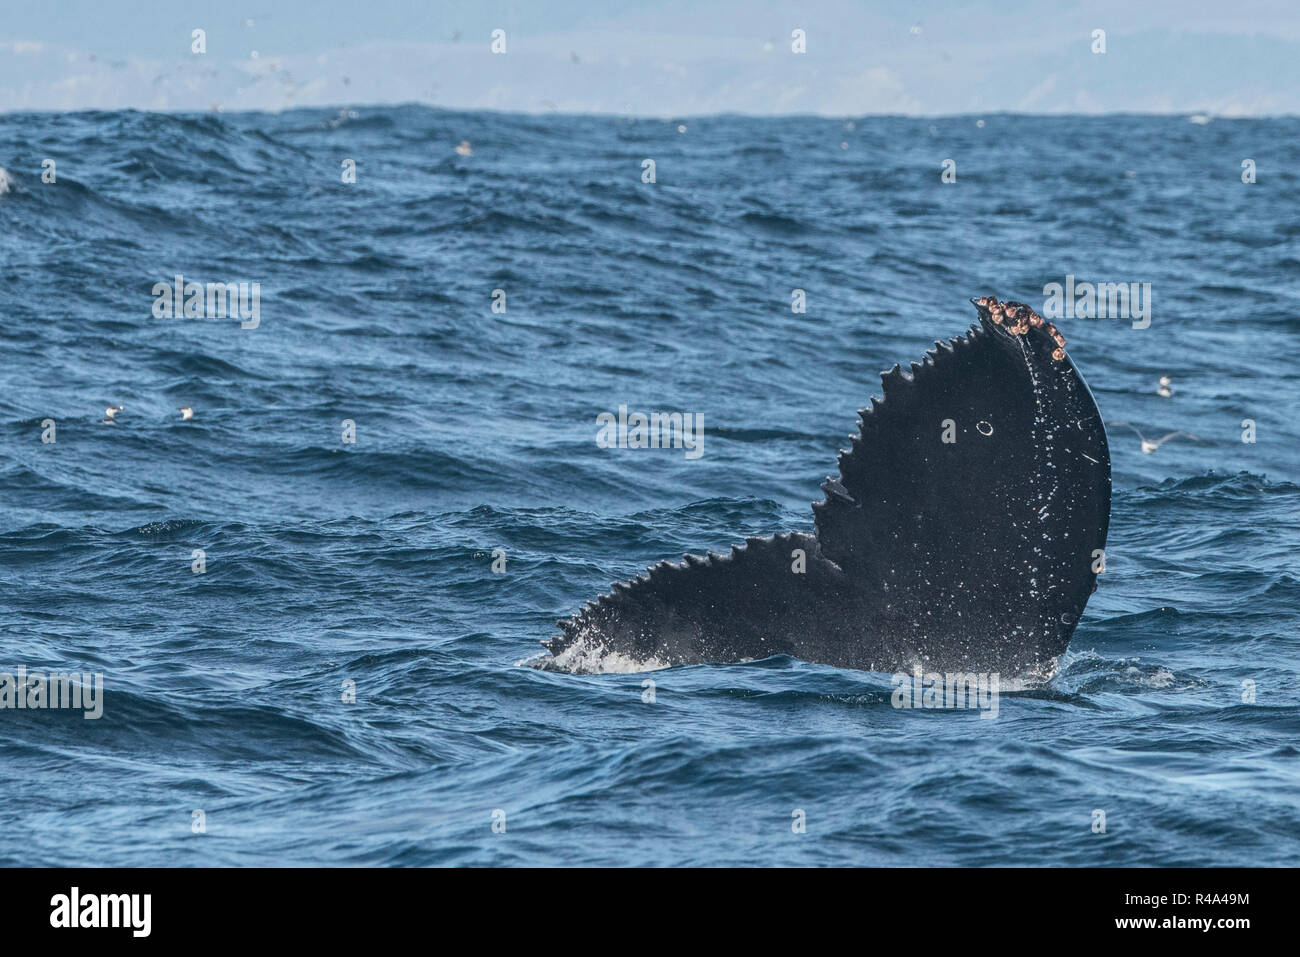 Una cola de ballena jorobada perteneciente a una que sobresale de las aguas frente a la costa de California, cerca de San Francisco. Foto de stock